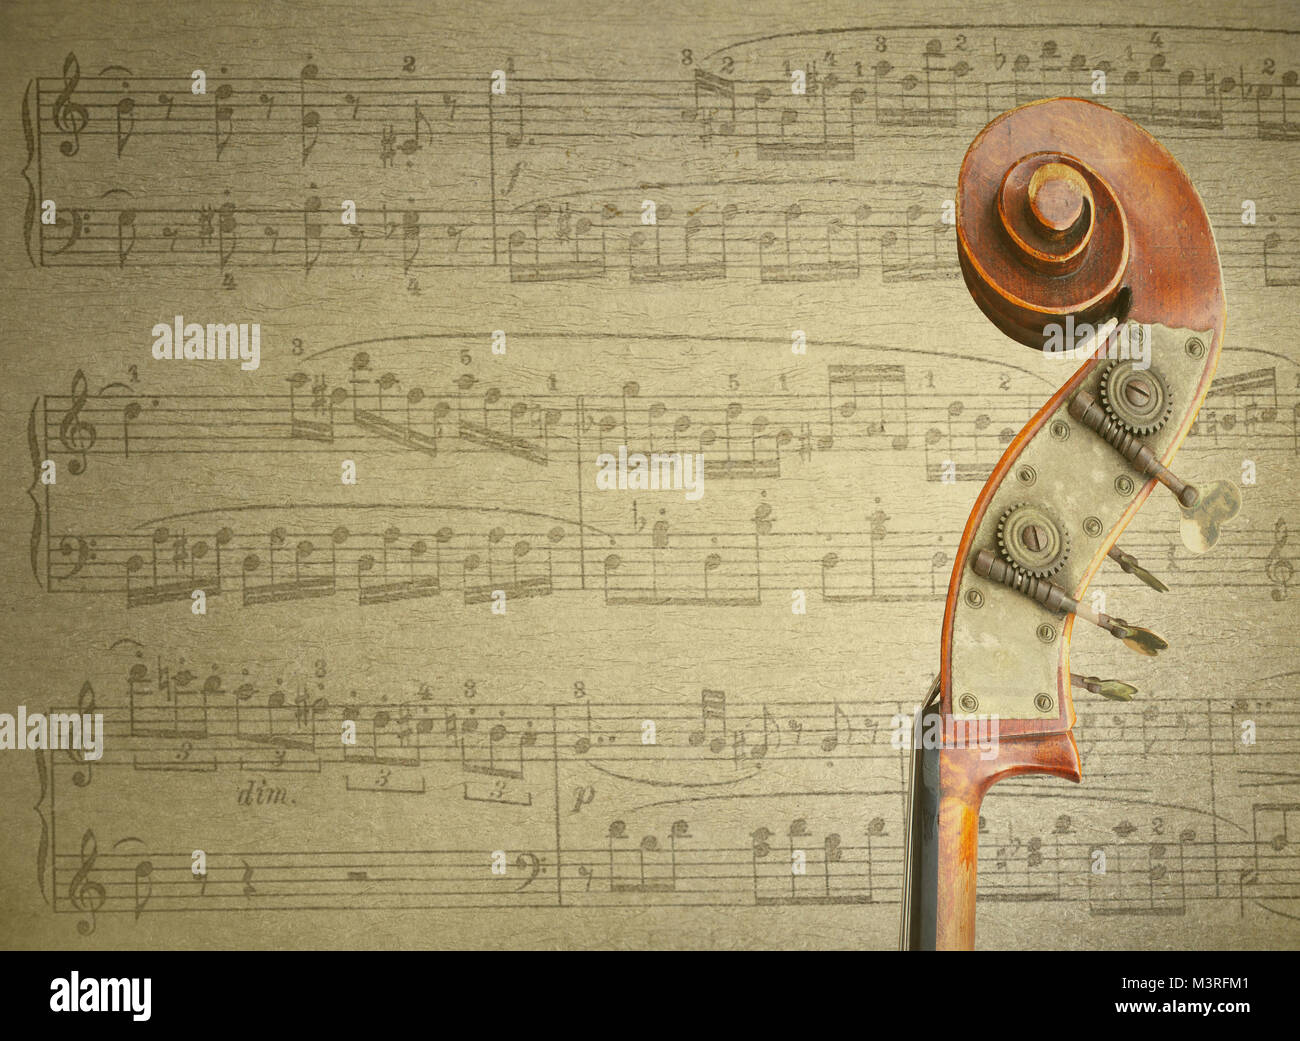 Dettaglio di un manico di un violoncello con spartito musicale sullo sfondo Foto Stock